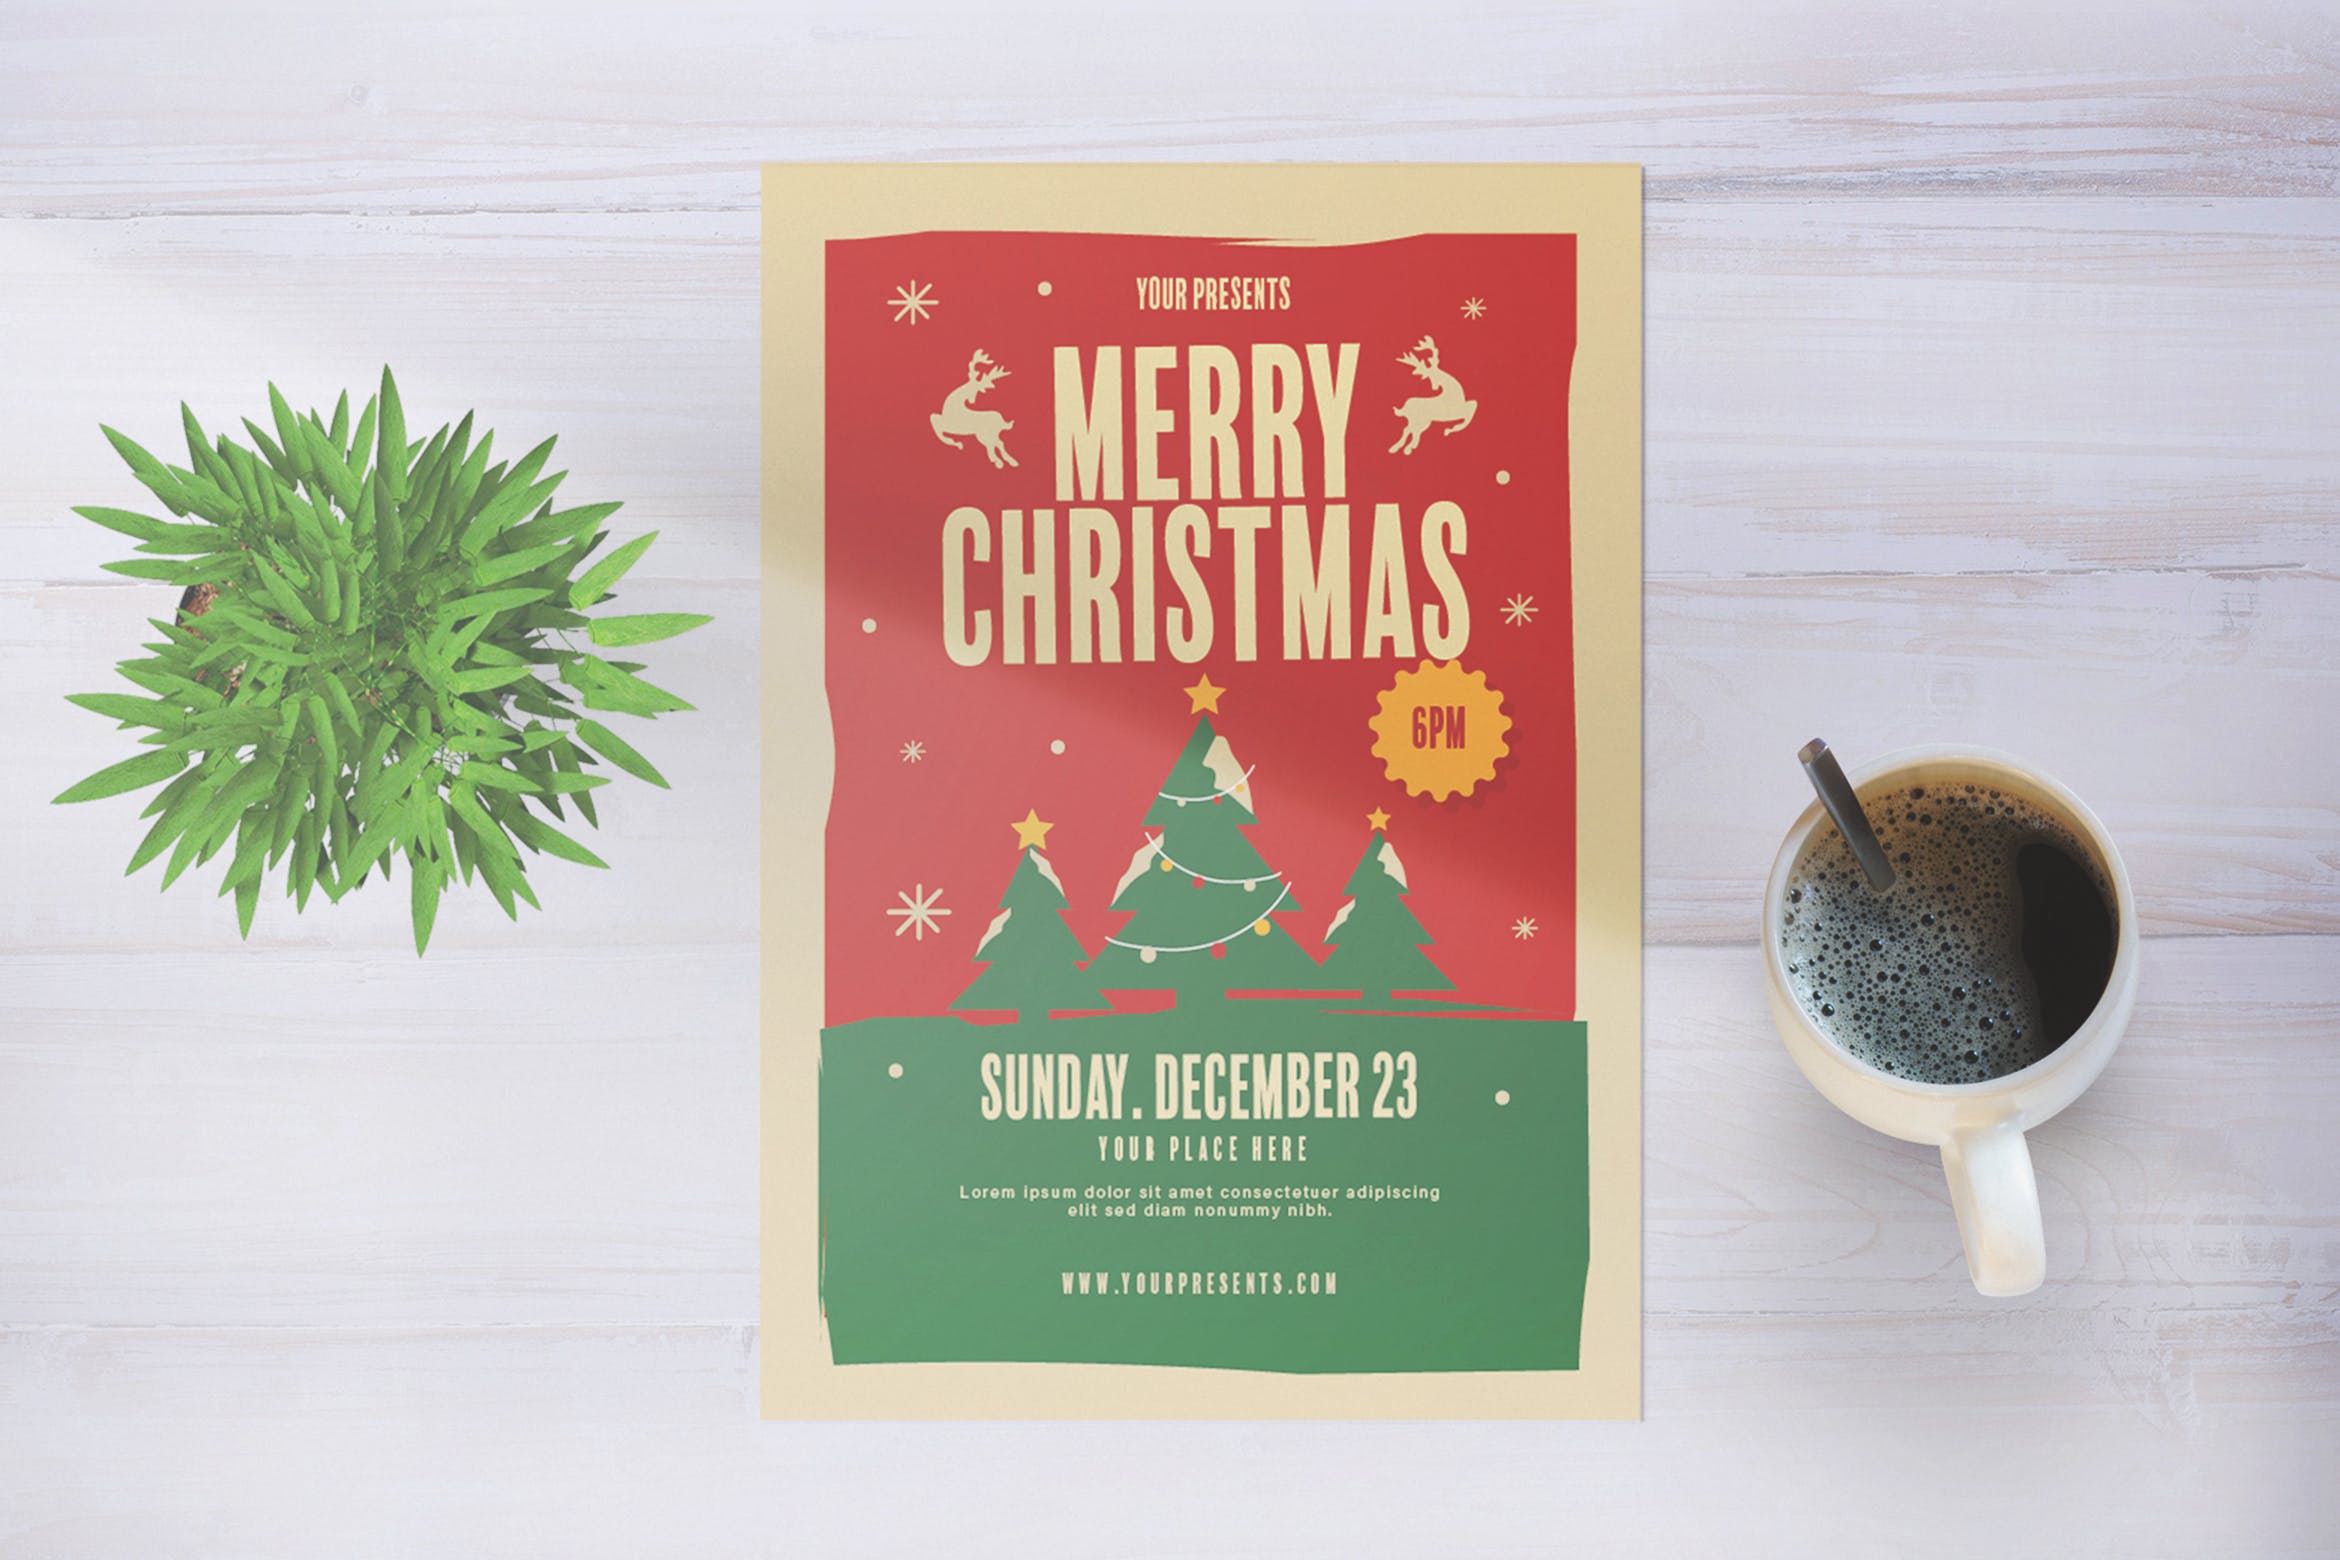 复古设计风格圣诞节活动宣传海报模板 Merry Christmas Party插图